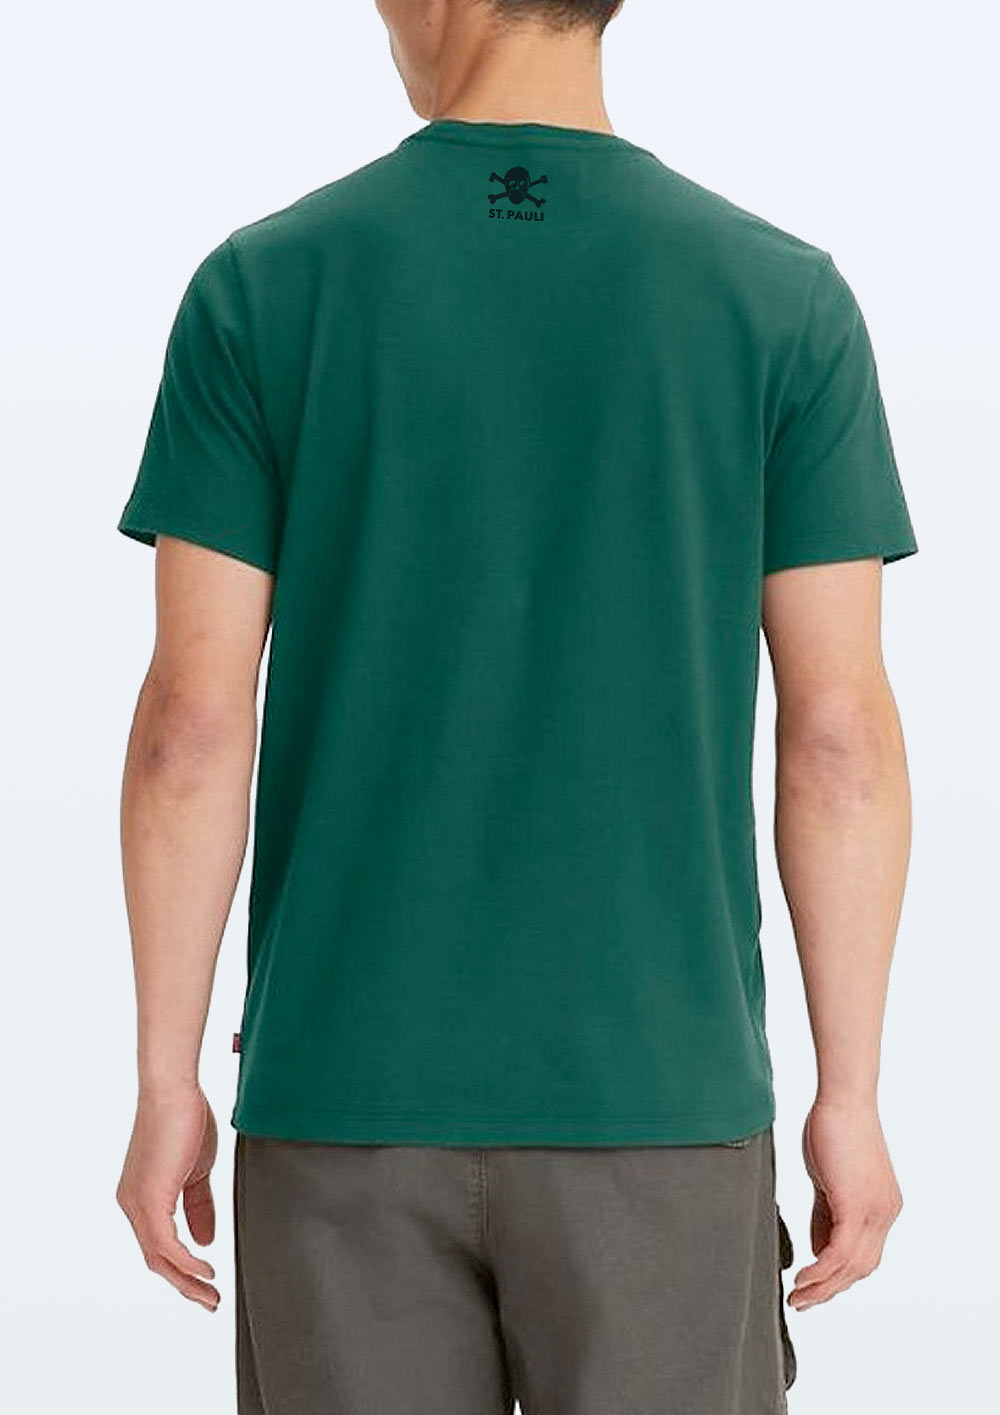 Levis x FCSP T-Shirt "Evergreen" 